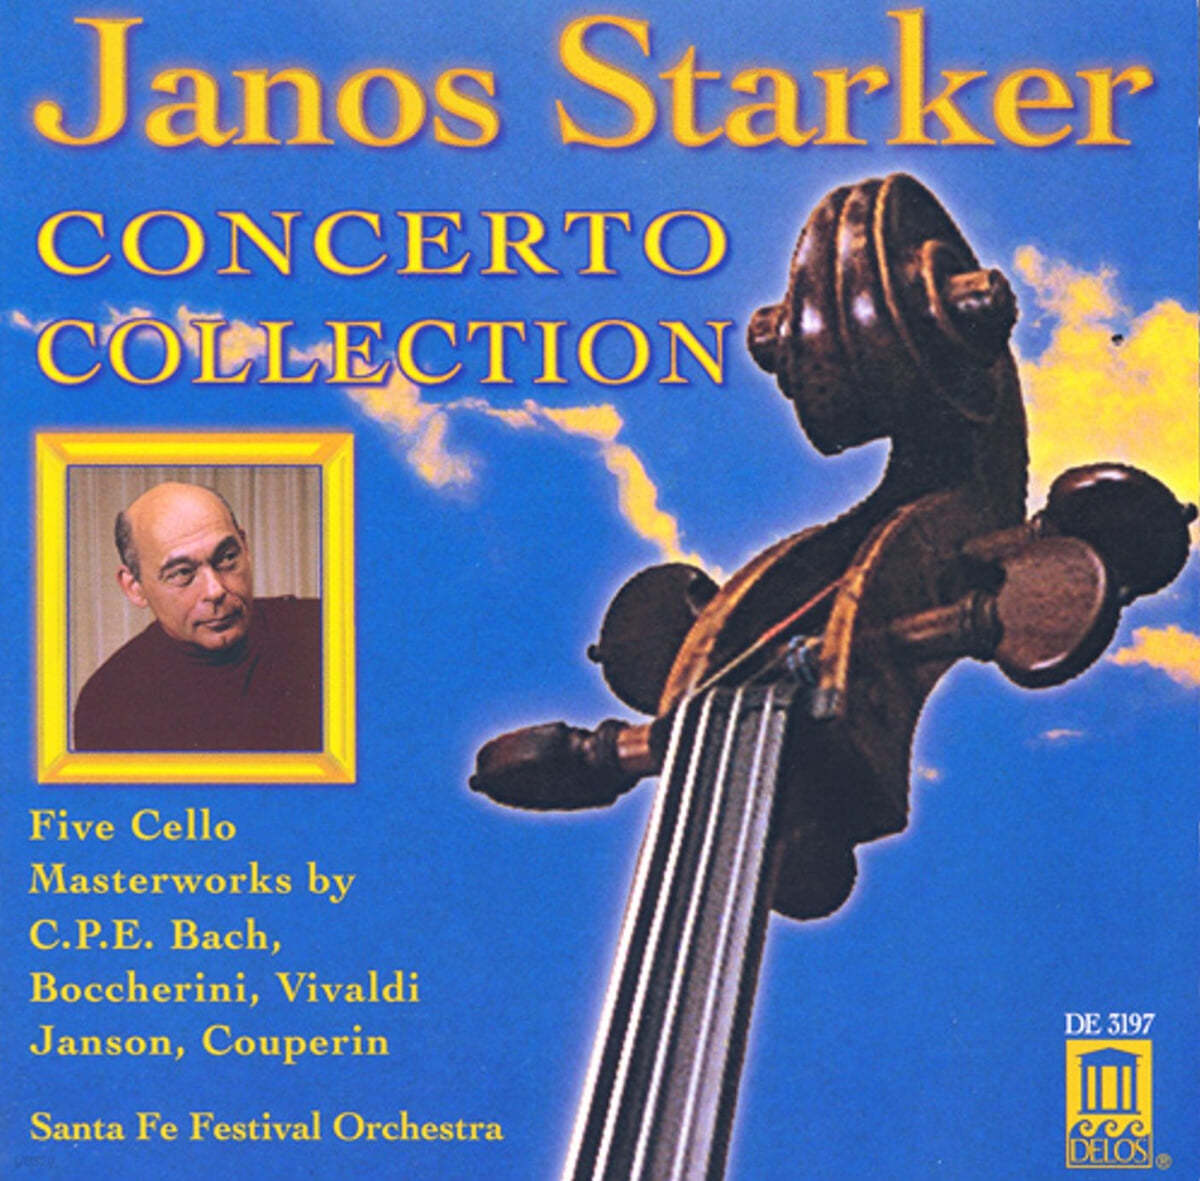 Janos Starker C.P.E.바흐 / 보케리니 / 비발디 외: 첼로 협주곡집 - 야노스 슈타커 (C.P.E.Bach / Boccherini / Vivaldi: Cello Concerto Collection)